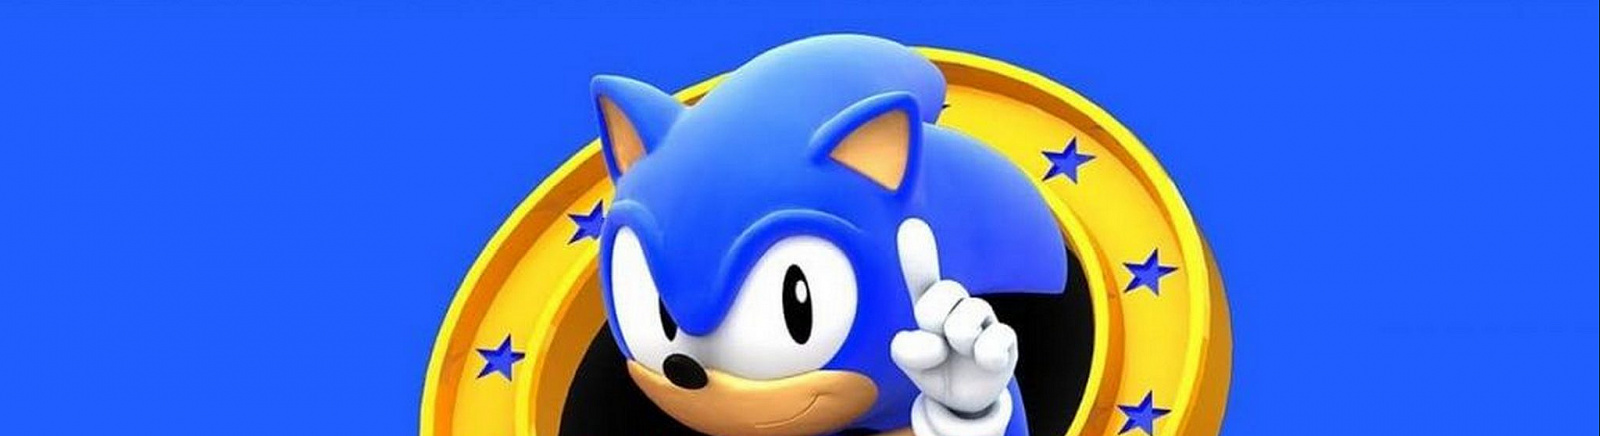 Дата выхода Sonic the Hedgehog 3 (Sonic 3)  на Xbox 360, Wii и Genesis в России и во всем мире